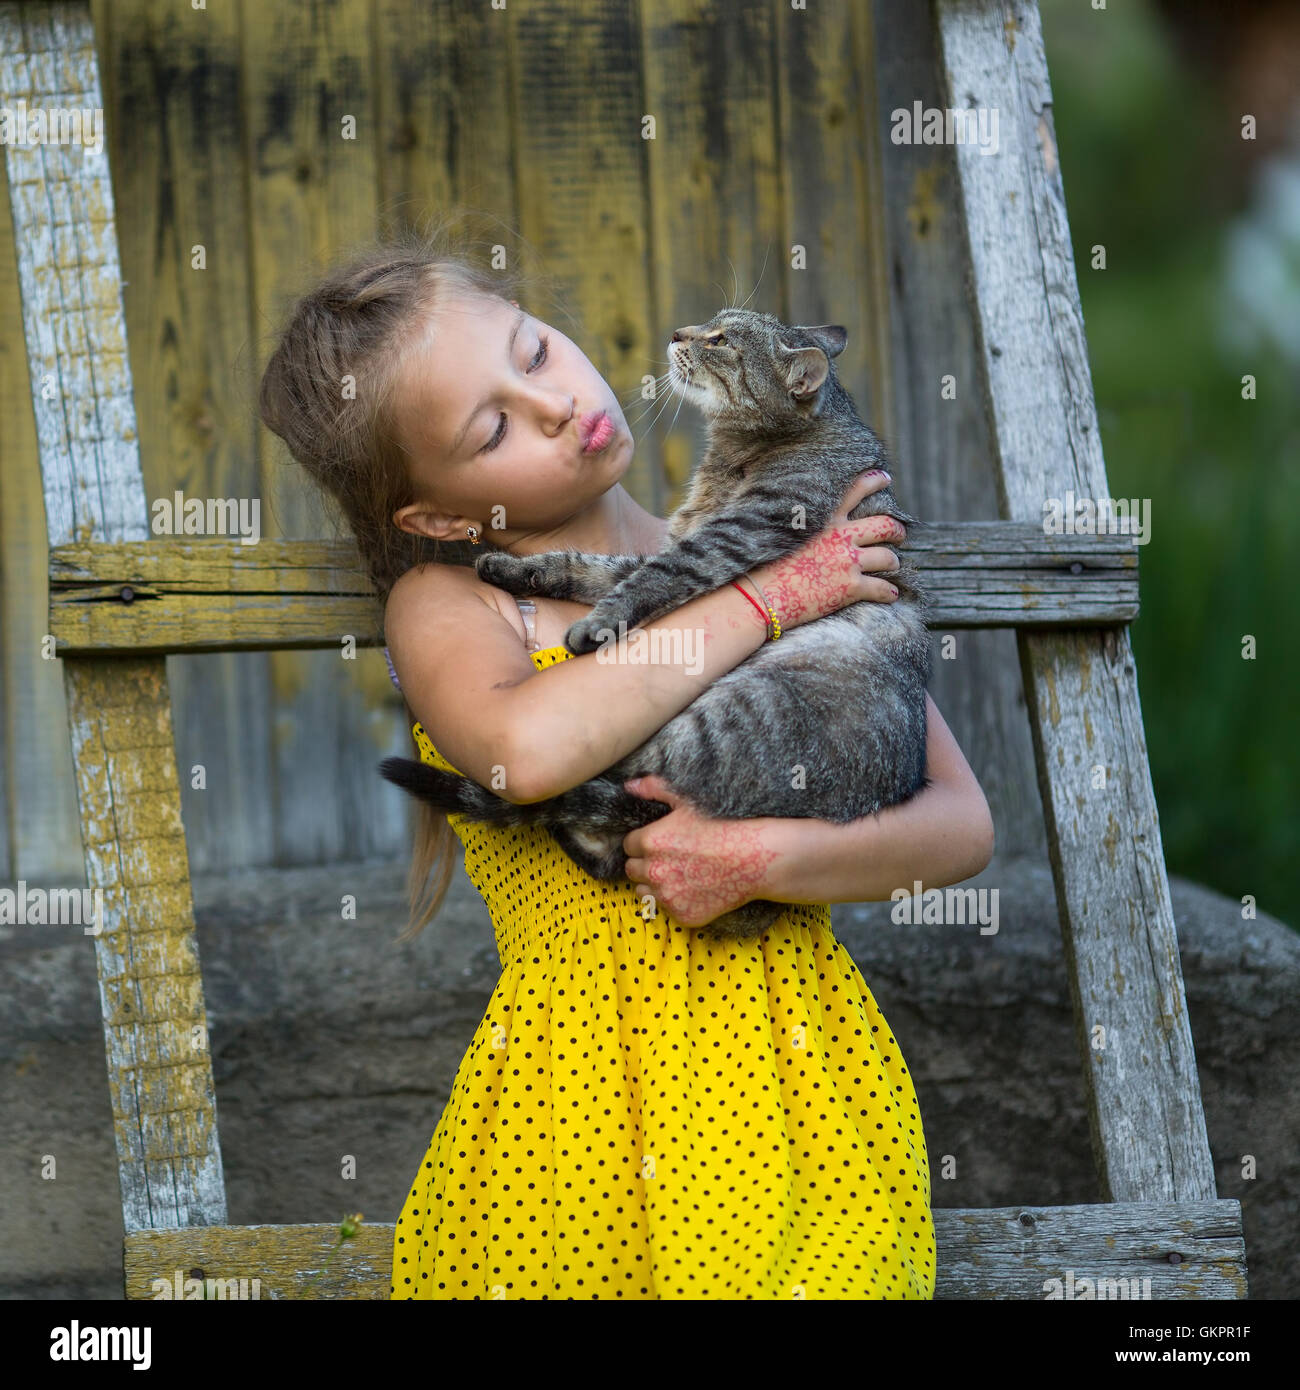 Lustige kleine Mädchen eine Katze im Arm halten Stockfotografie - Alamy